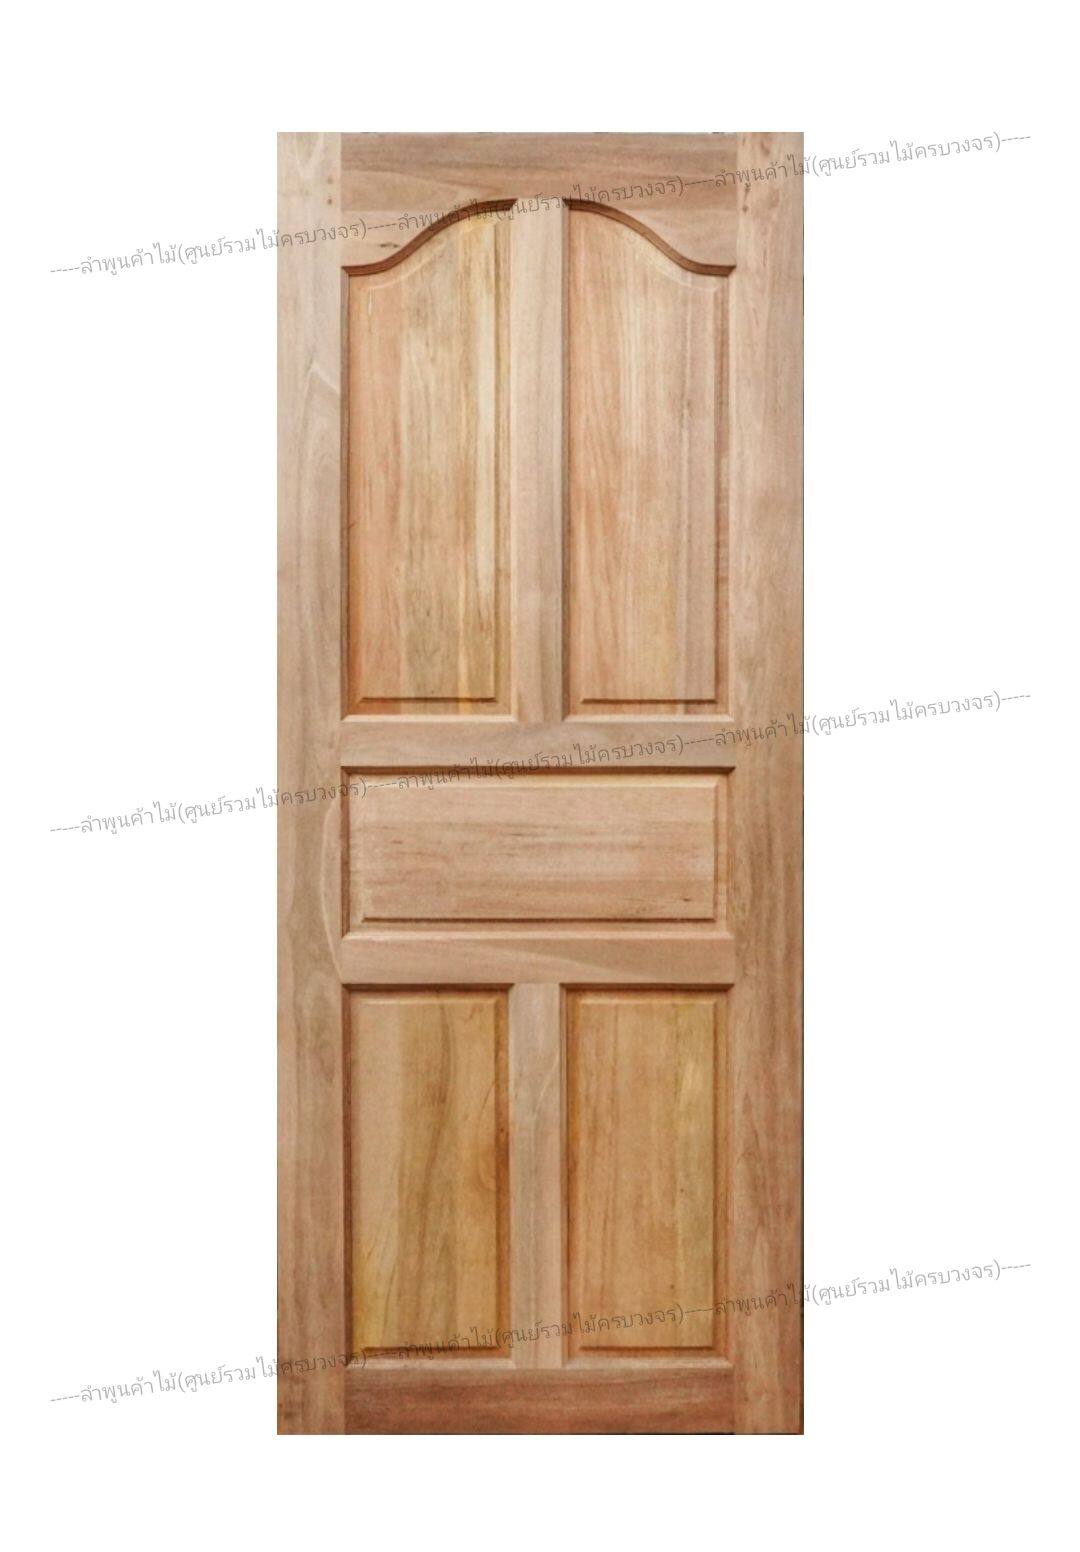 ประตูไม้สยาแดง ปีกนก 80x200 ซม. ลำพูนค้าไม้ (ศูนย์รวมไม้ครบวงจร) ประตู ประตูไม้ วงกบ วงกบไม้ ประตูห้องนอน ประตูห้องน้ำ ประตูหน้าบ้าน ประตูหลังบ้าน ประตูไม้จริง ประตูบ้าน ประตูไม้ถูก ประตูไม้ราคาถูก ไม้ ไม้สัก ประตูไม้สักโมเดิร์น ประตูเดี่ยว กระจก ประตูคู่